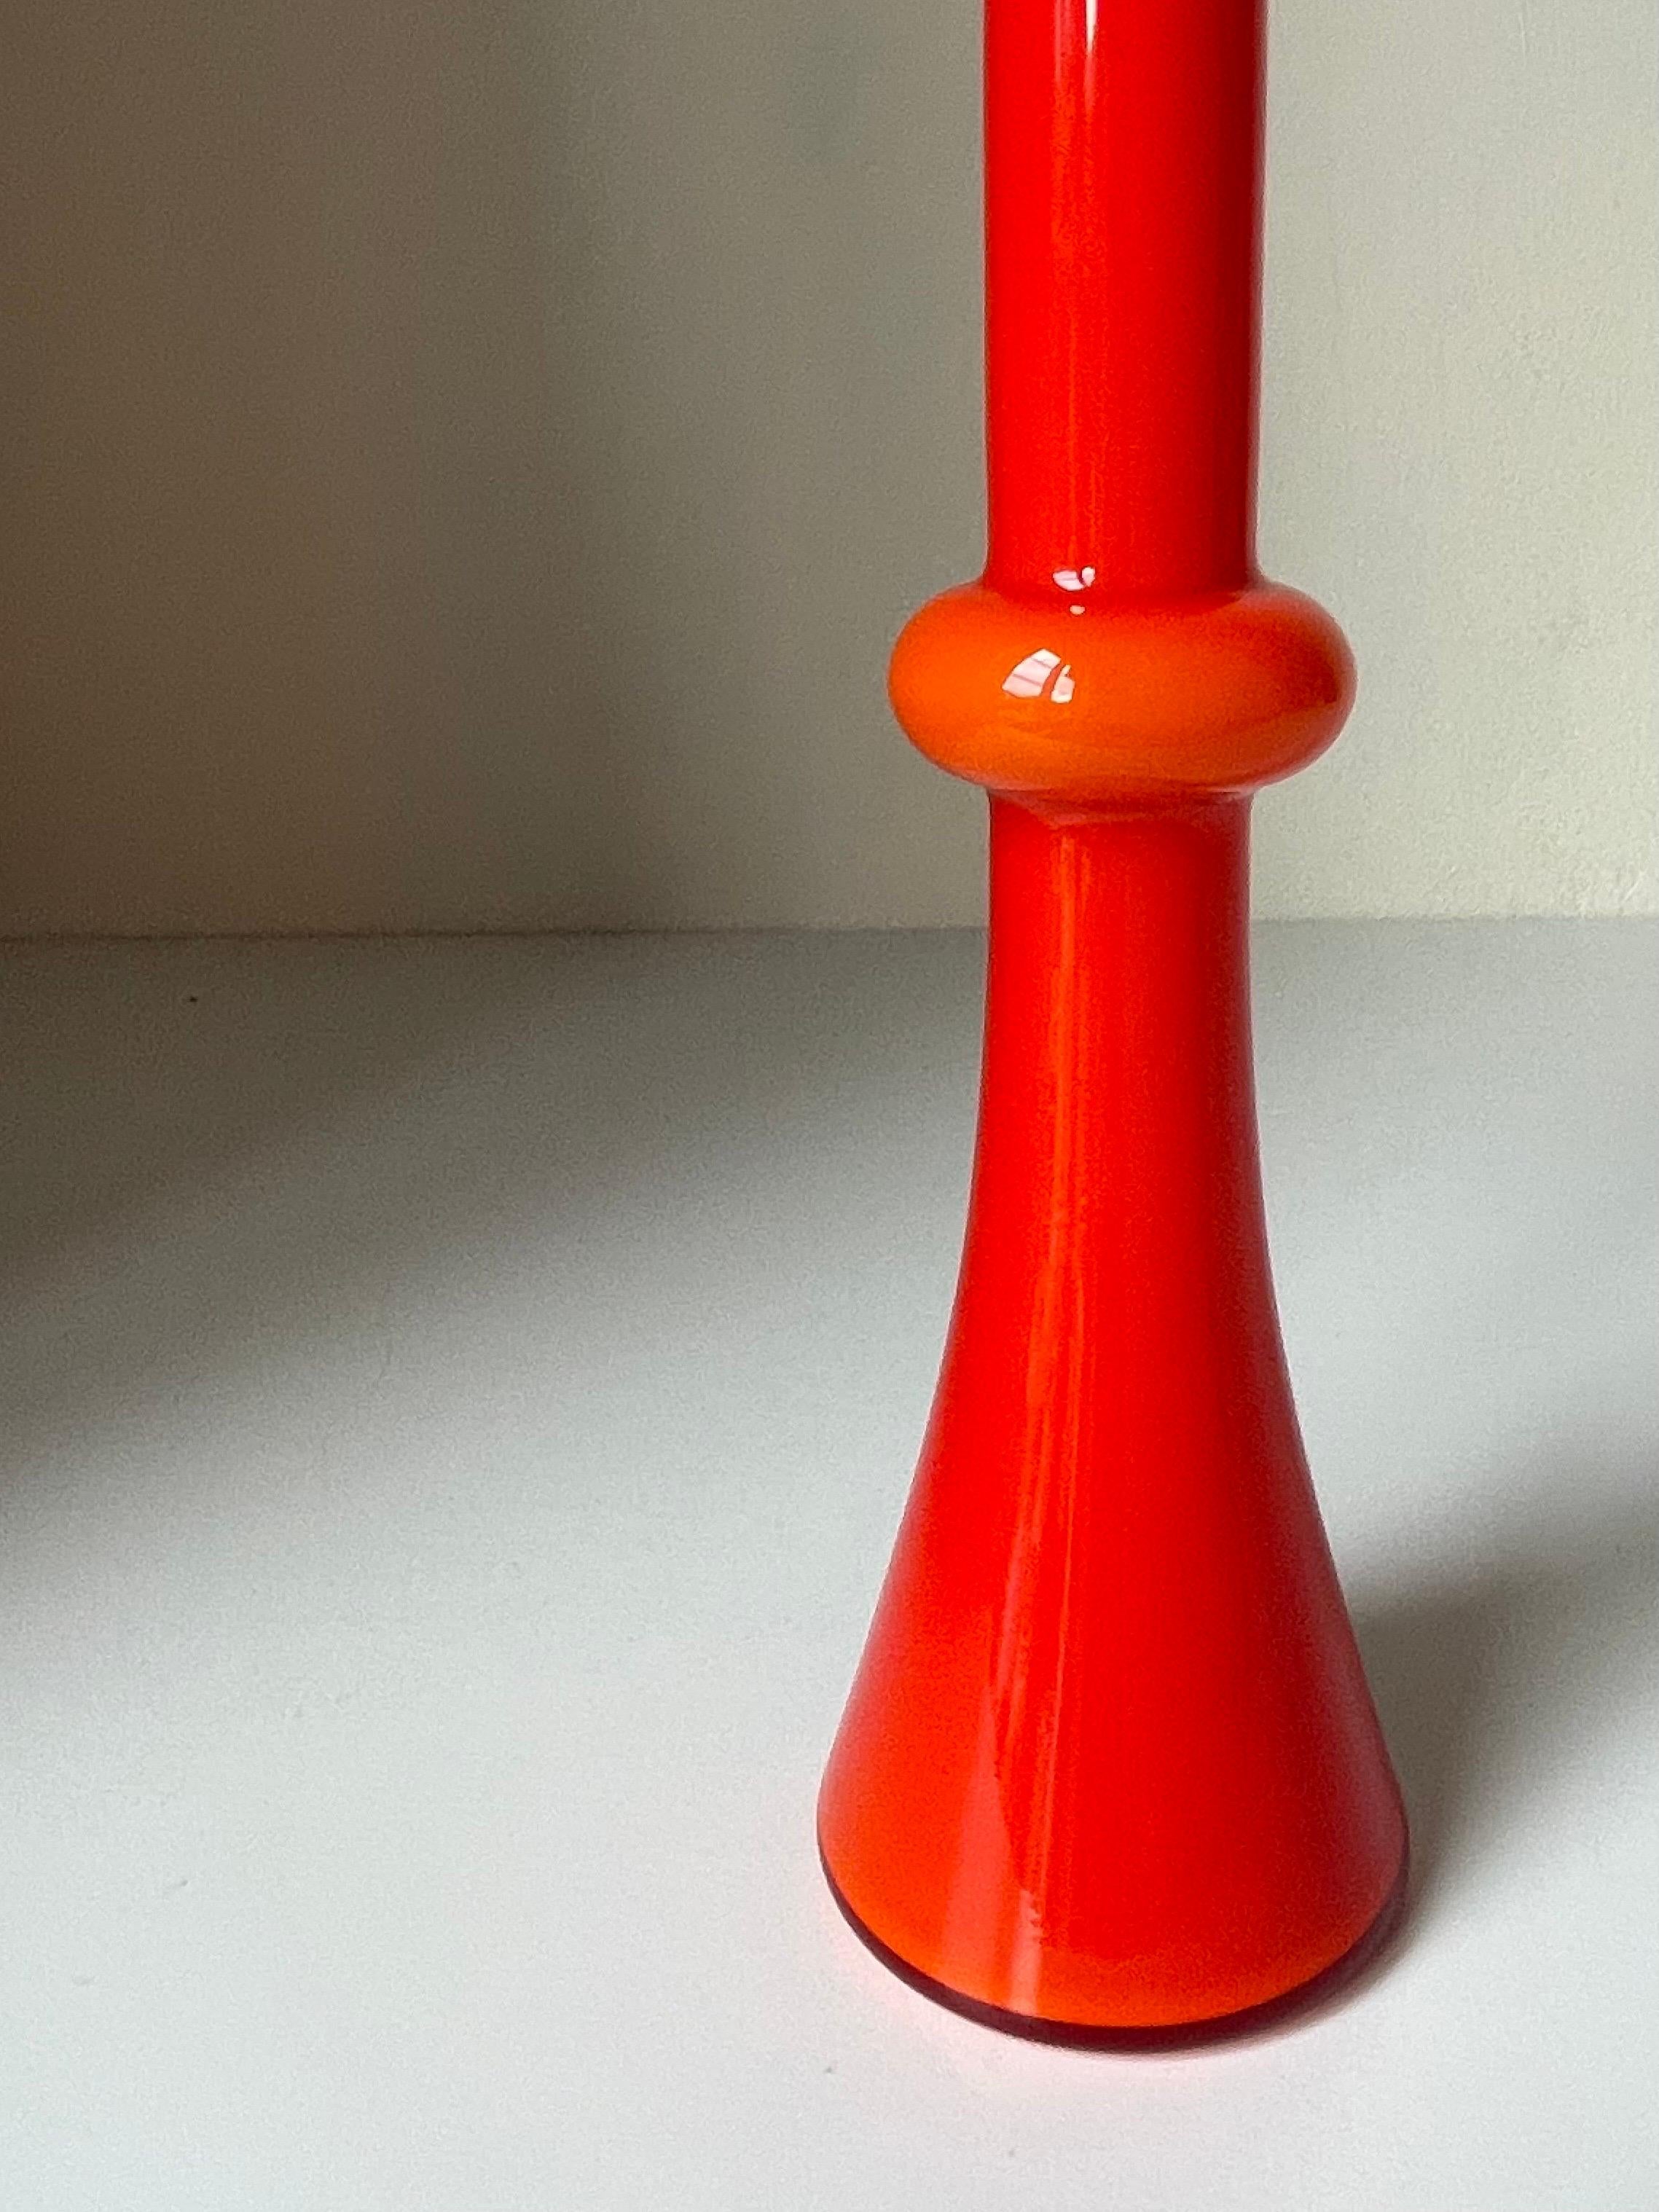 Holmegaard 1968 Red Pop Art Glass Vase with Globe, Denmark For Sale 4